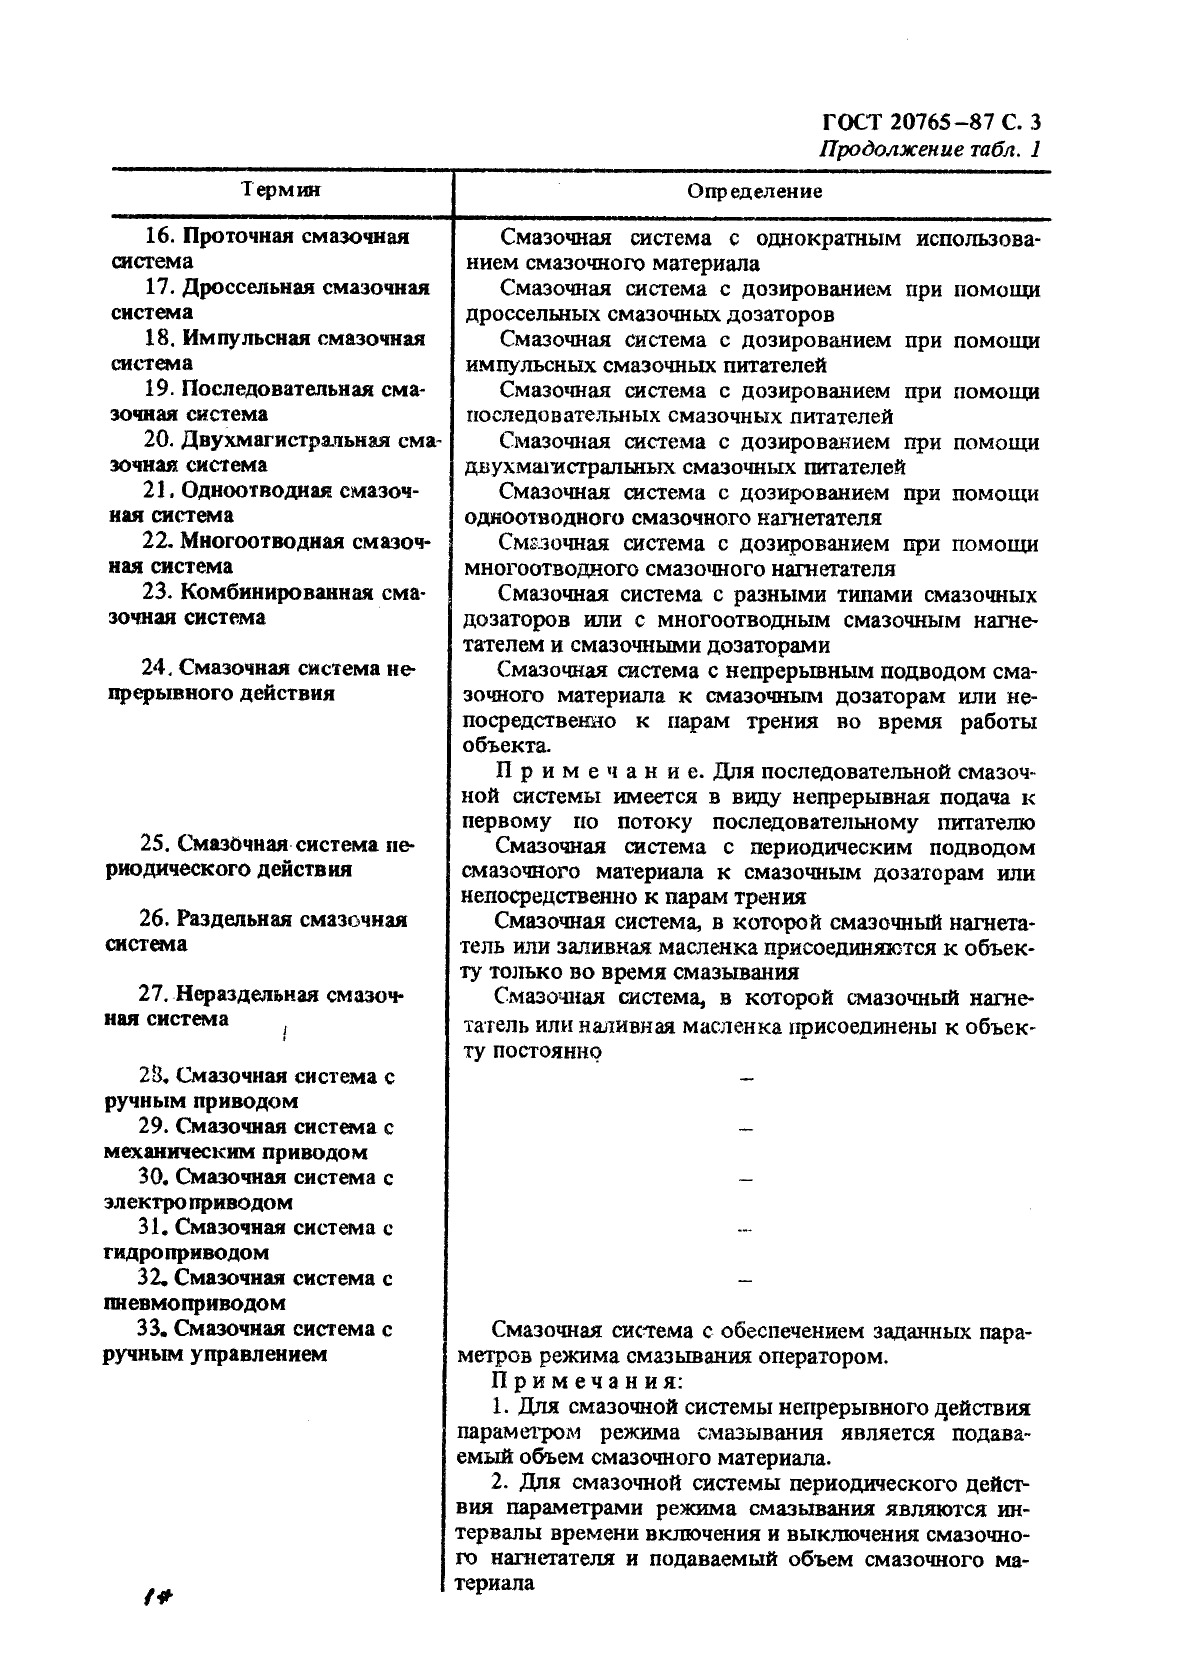 ГОСТ 20765-87 Системы смазочные. Термины и определения (фото 4 из 18)